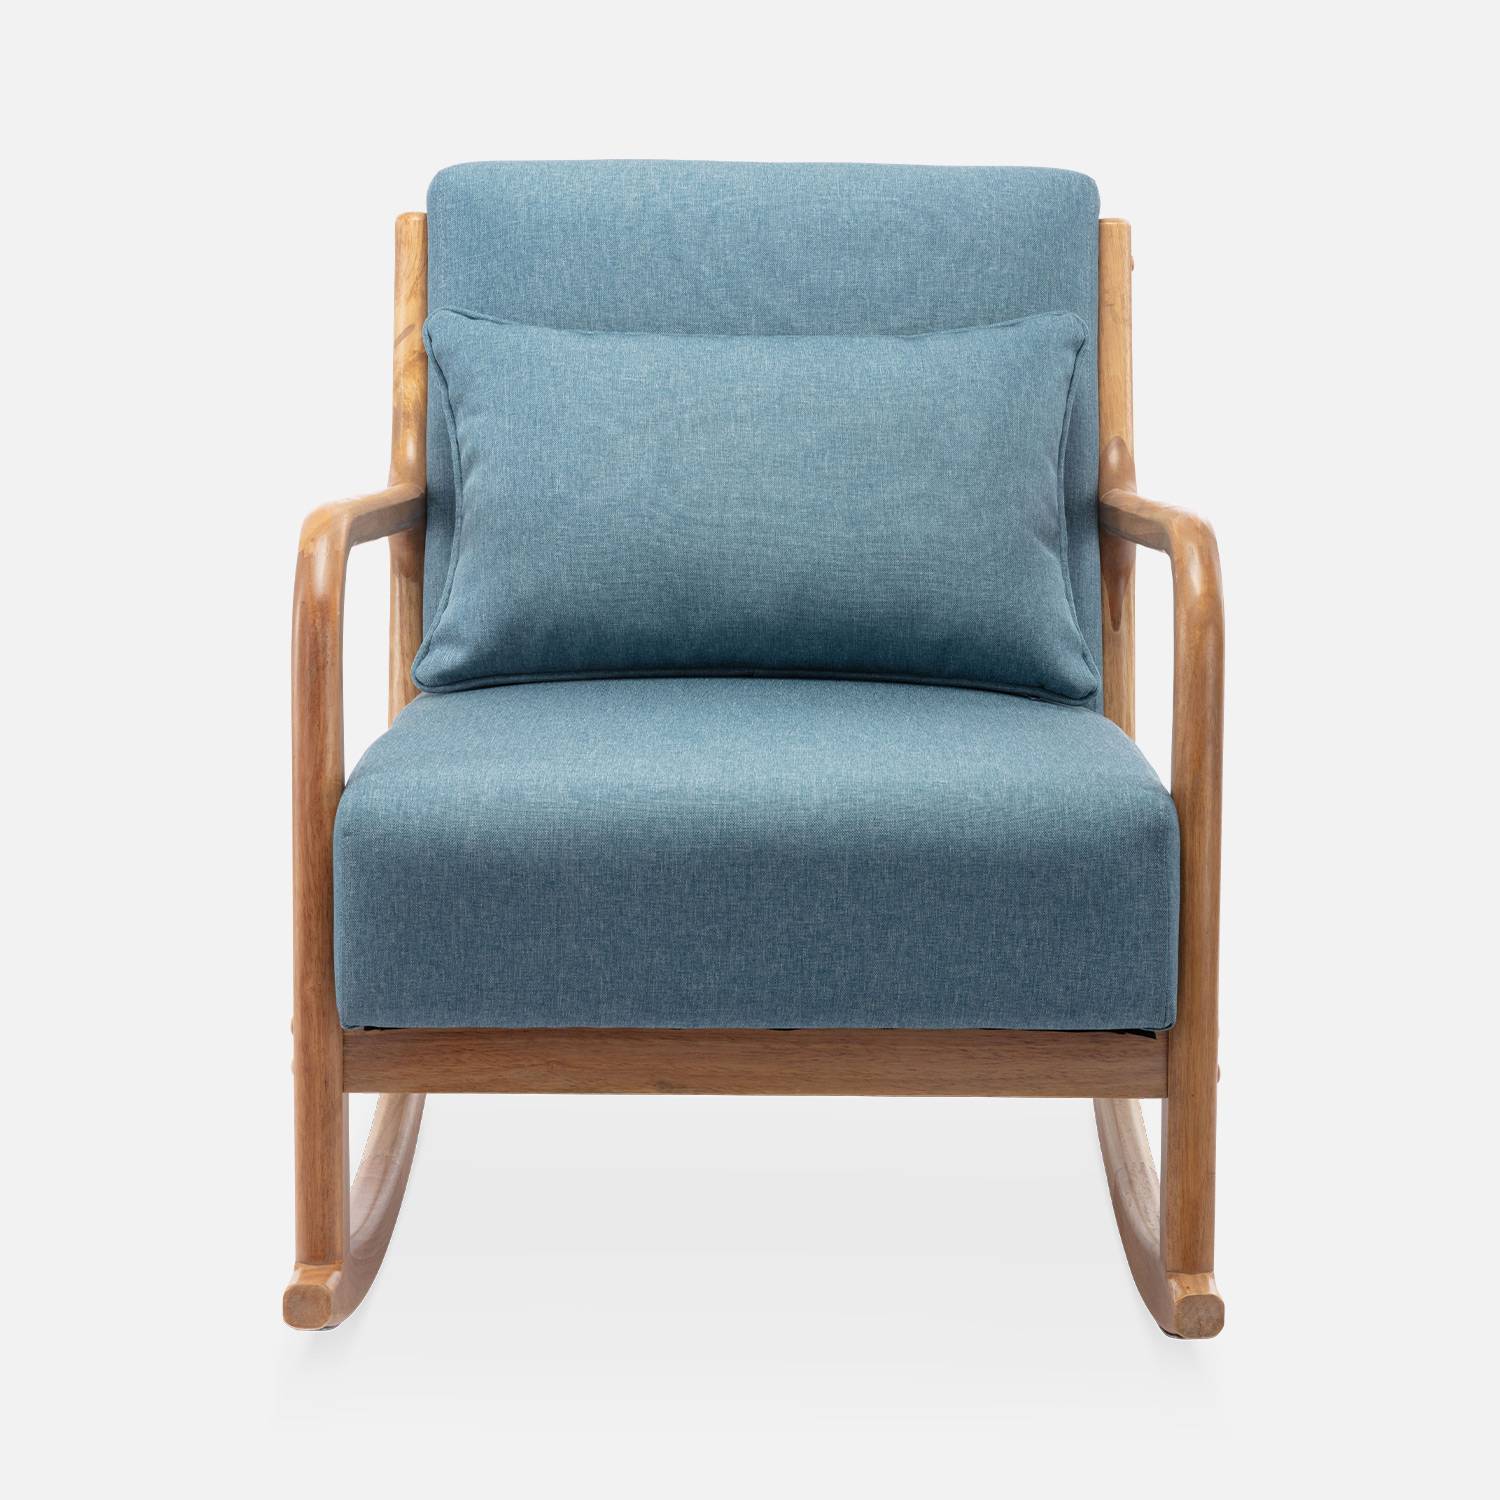 Sedia a dondolo di design in legno e tessuto, 1 posto, sedia a dondolo scandinava, blu Photo4